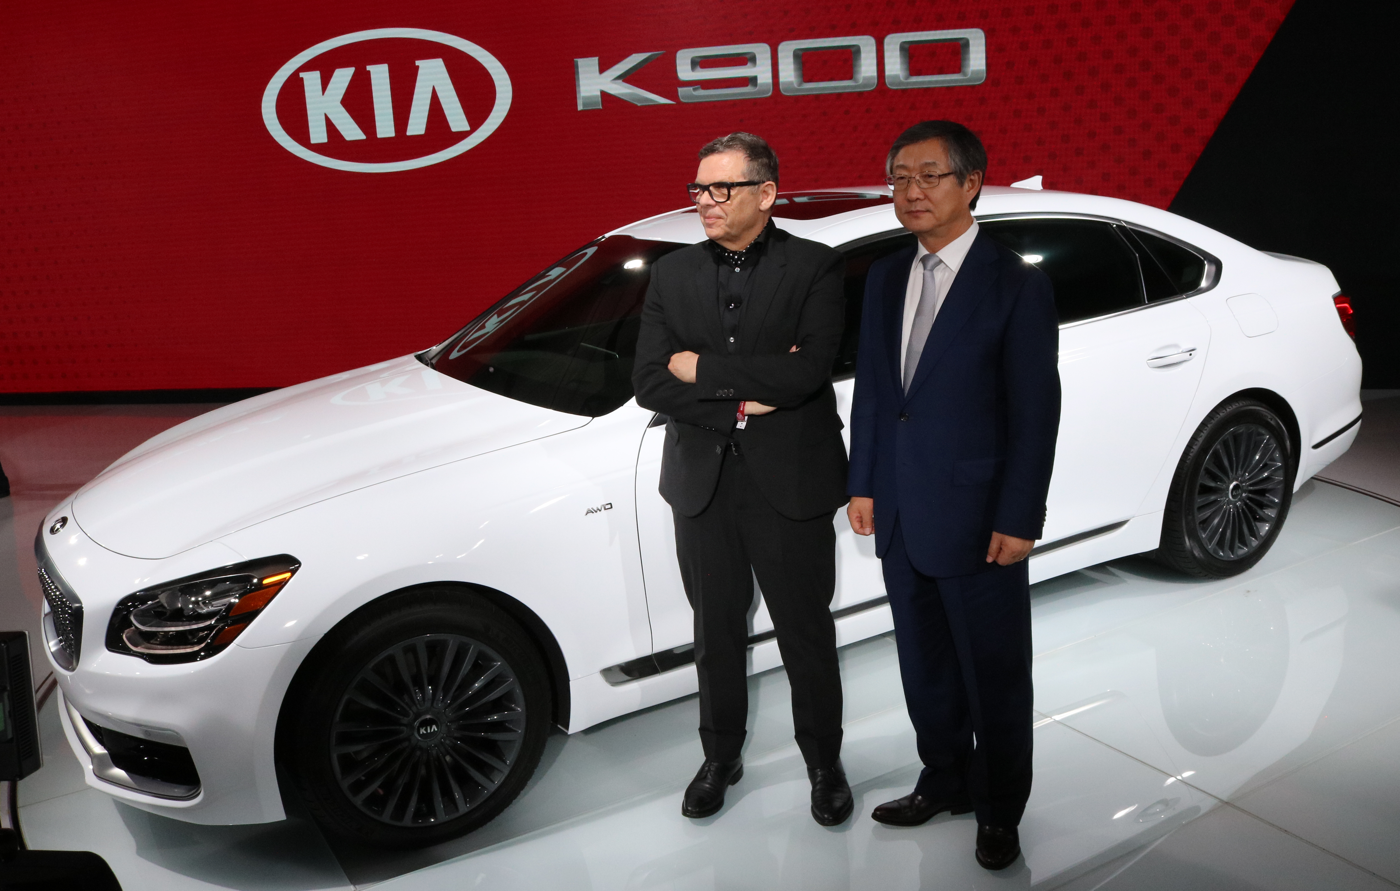 2019 Kia K900 at NY Auto Show with Officers